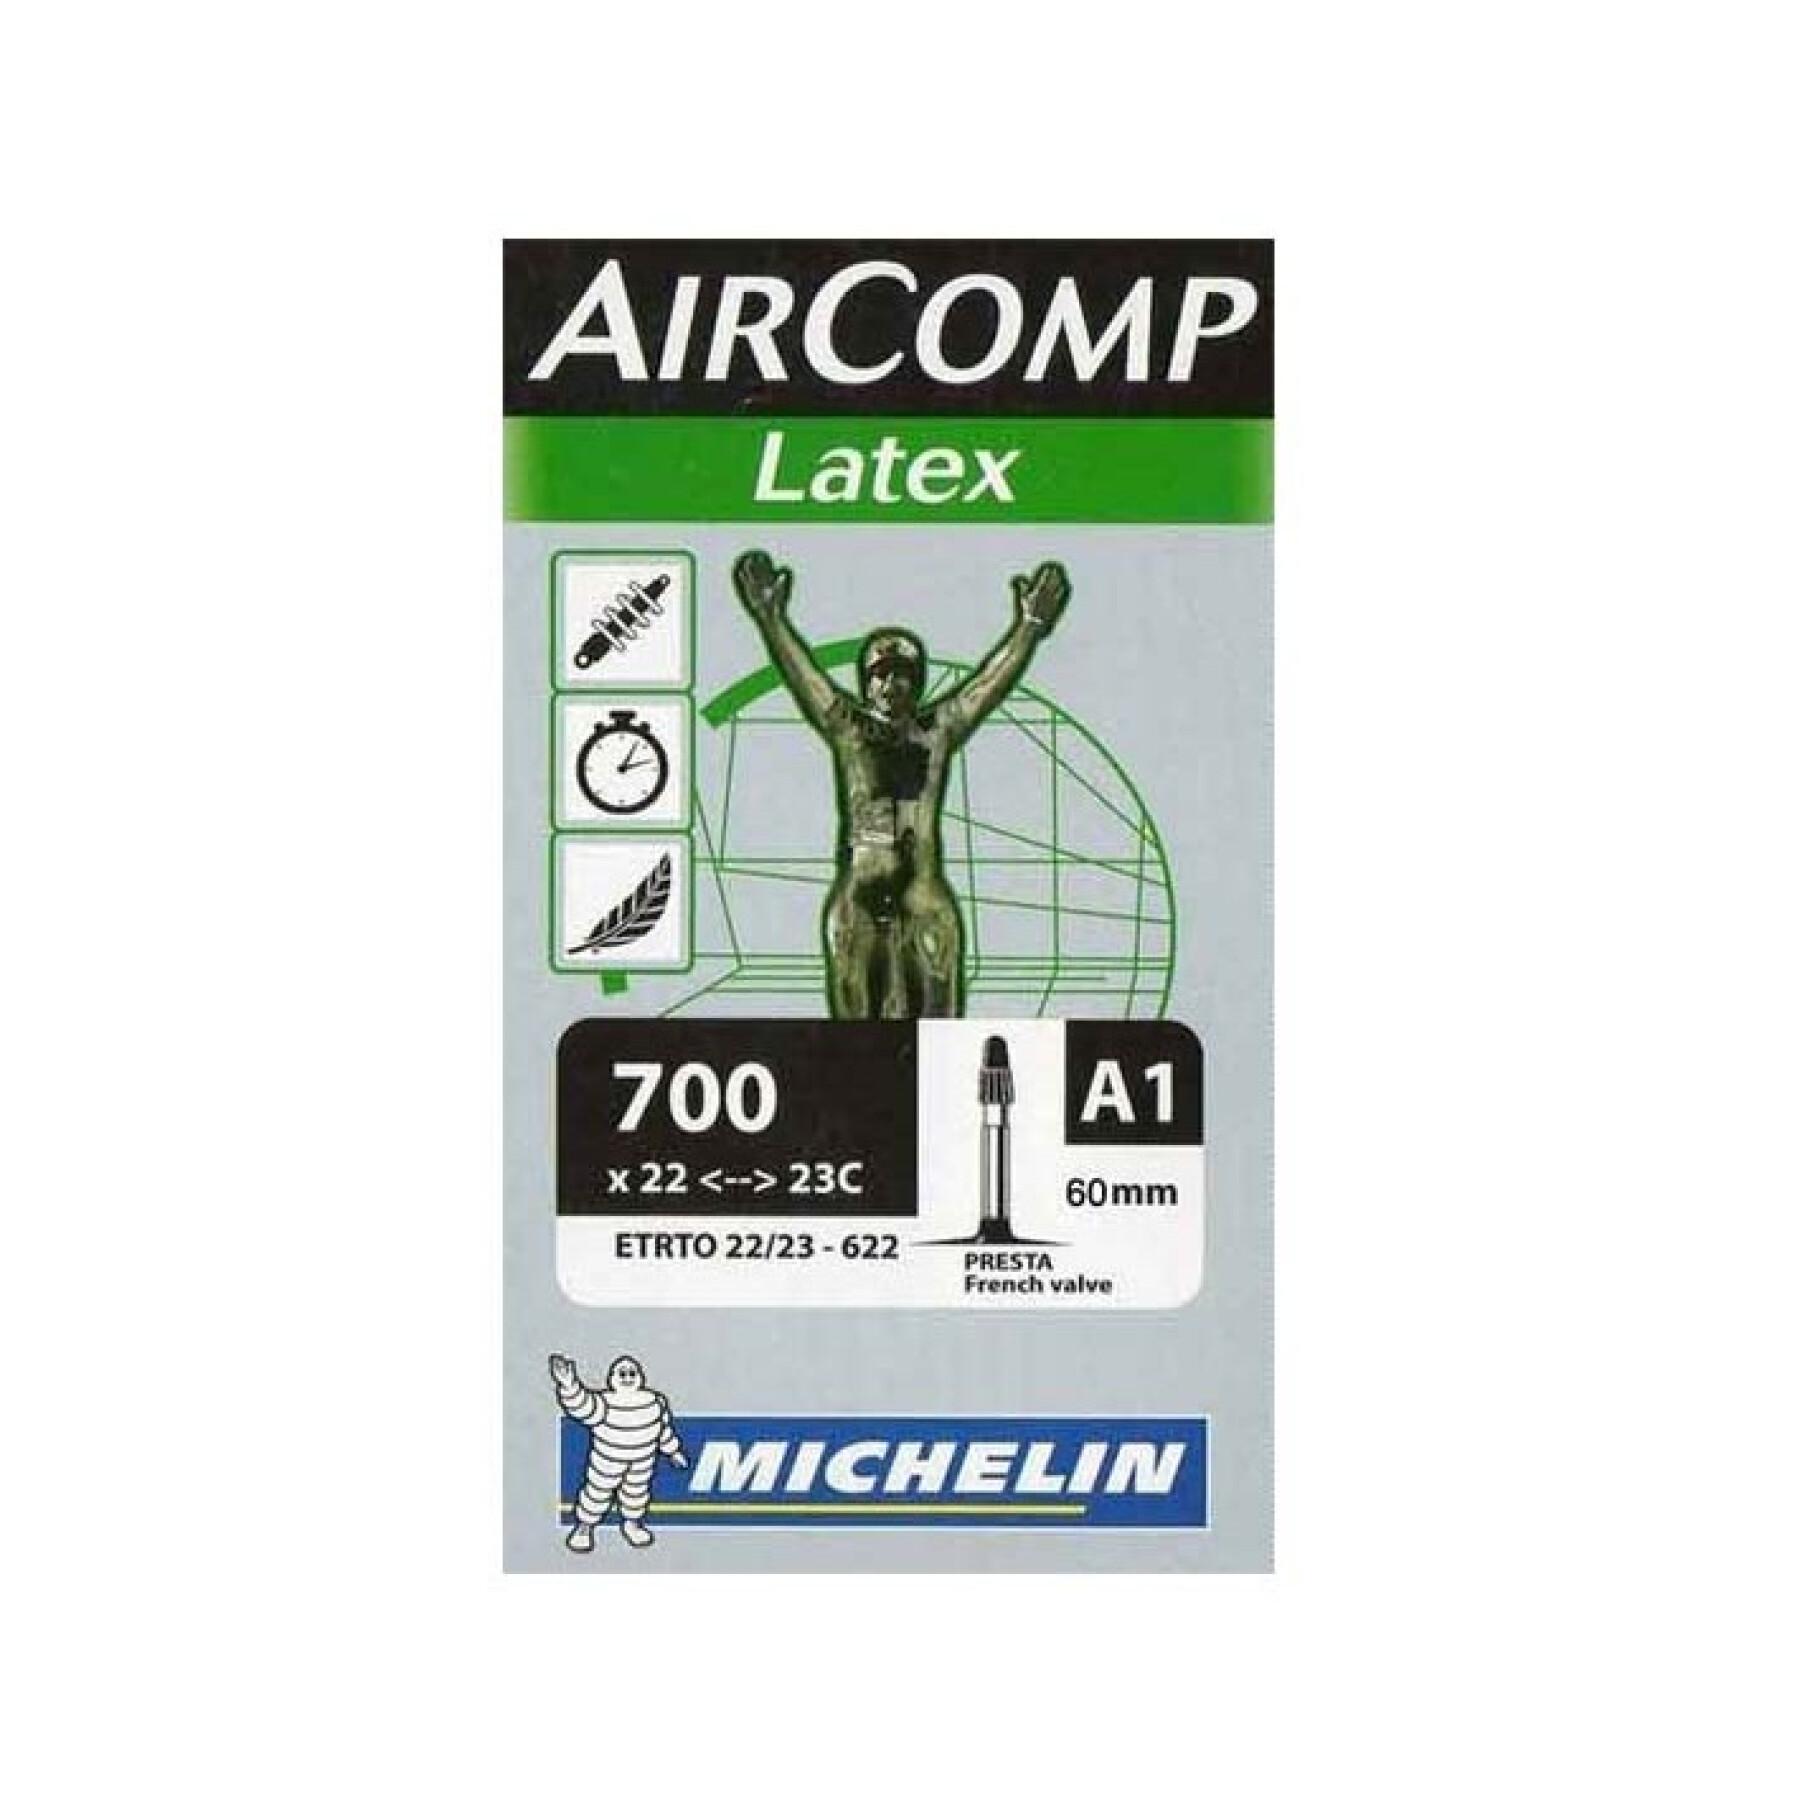 Camera d'aria della valvola Presta Michelin 700x22-23C